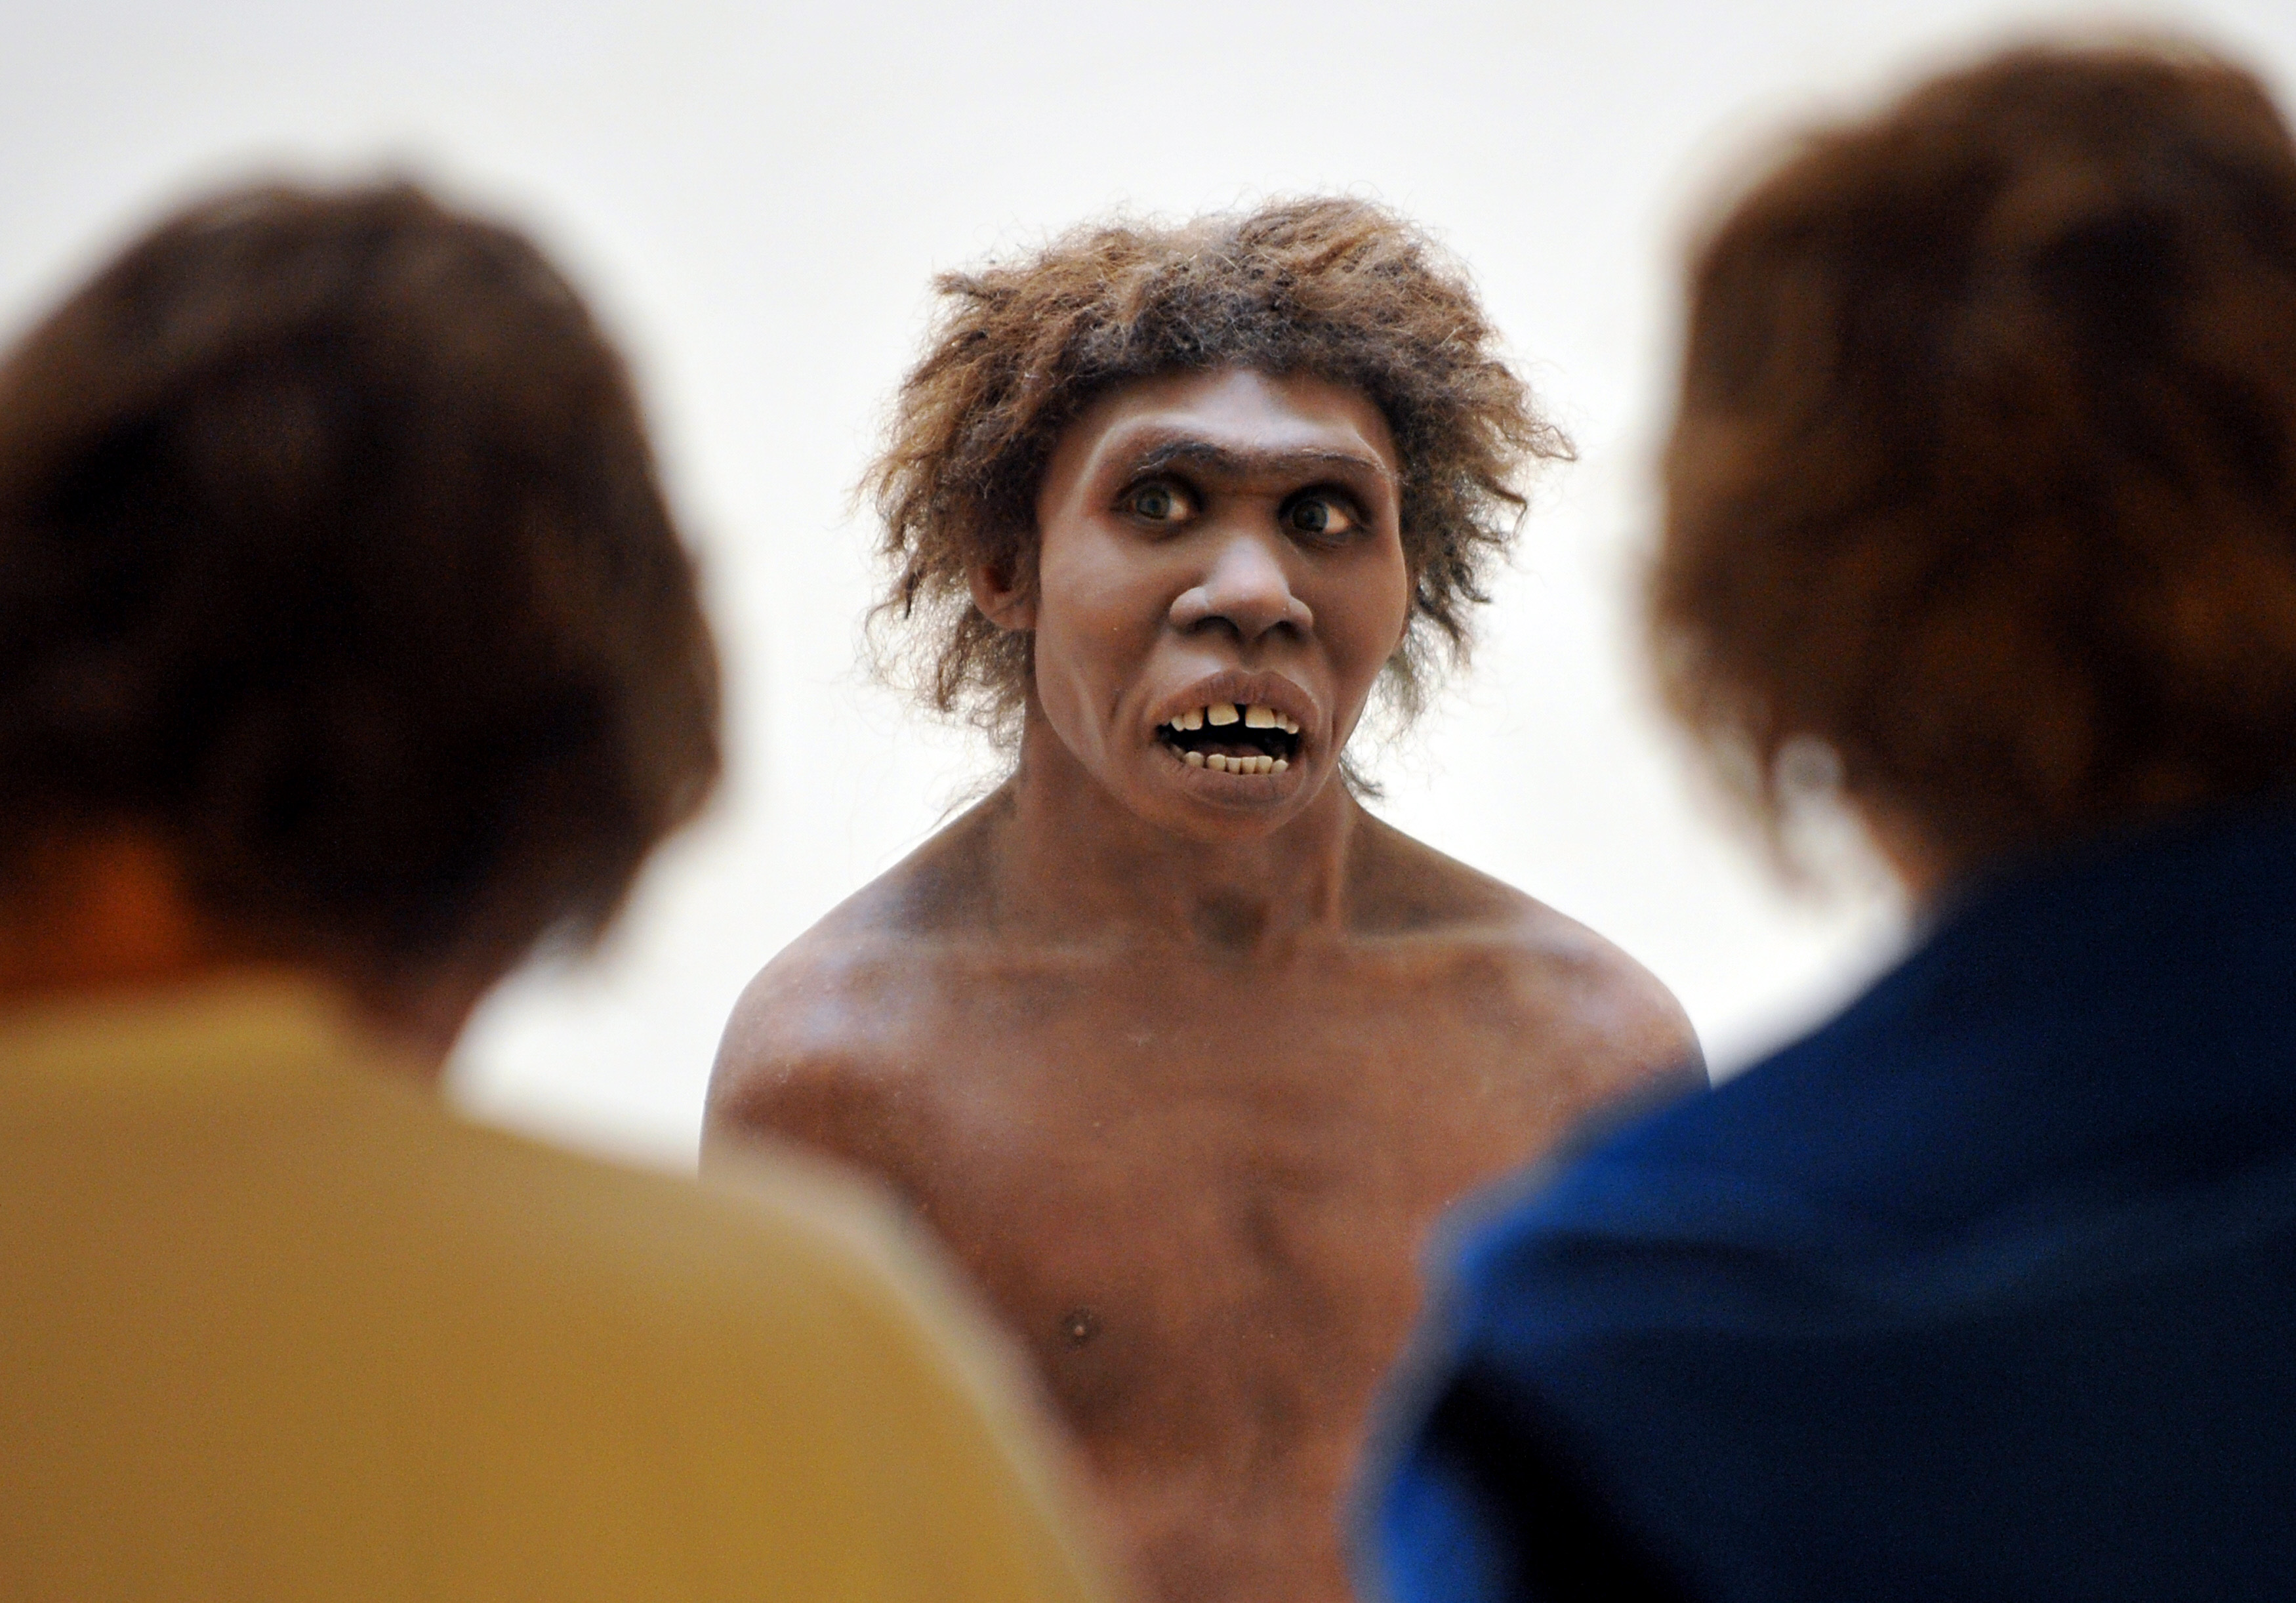 Neandervölgyi ember rekonstrukciója egy franciaországi kiállításon